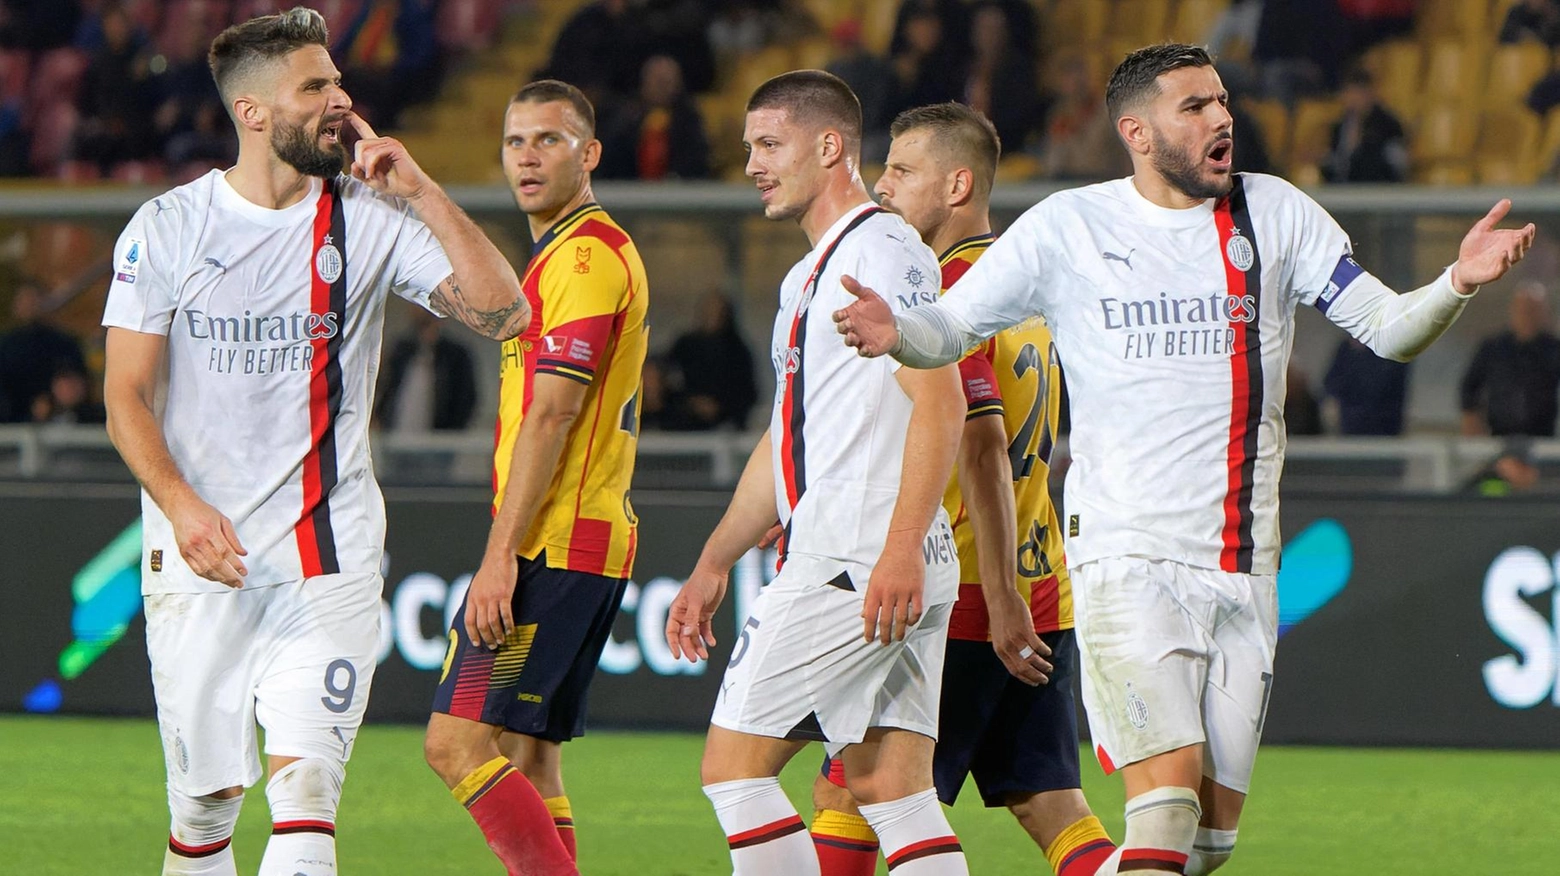 La protesta costata a Giroud il cartellino rosso durante il match contro il Lecce